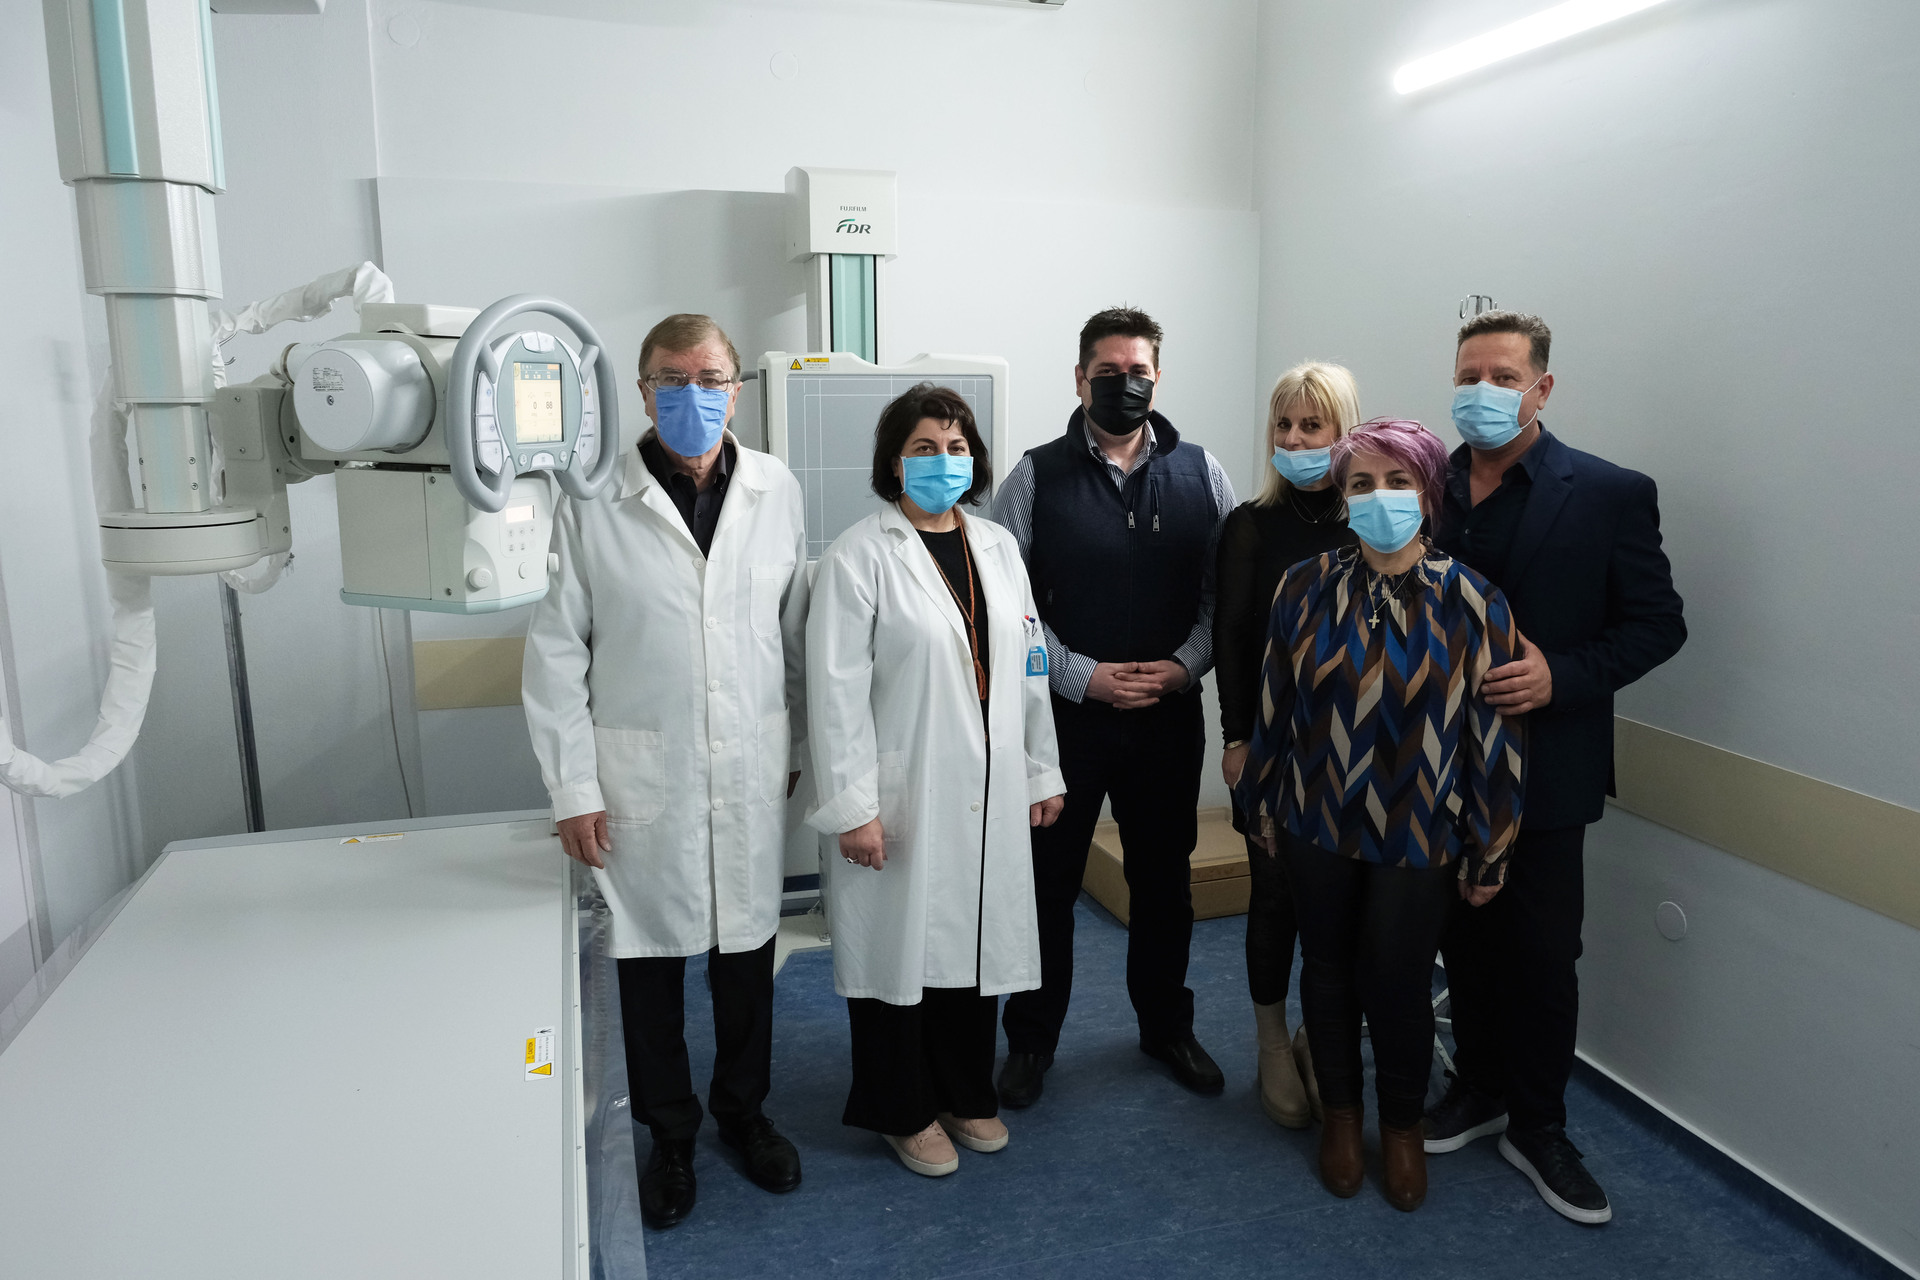 Εγκαταστάθηκε στο Νοσοκομείο Νάουσας νέο υπερσύγχρονο ψηφιακό ακτινολογικό συγκρότημα - Βίντεο